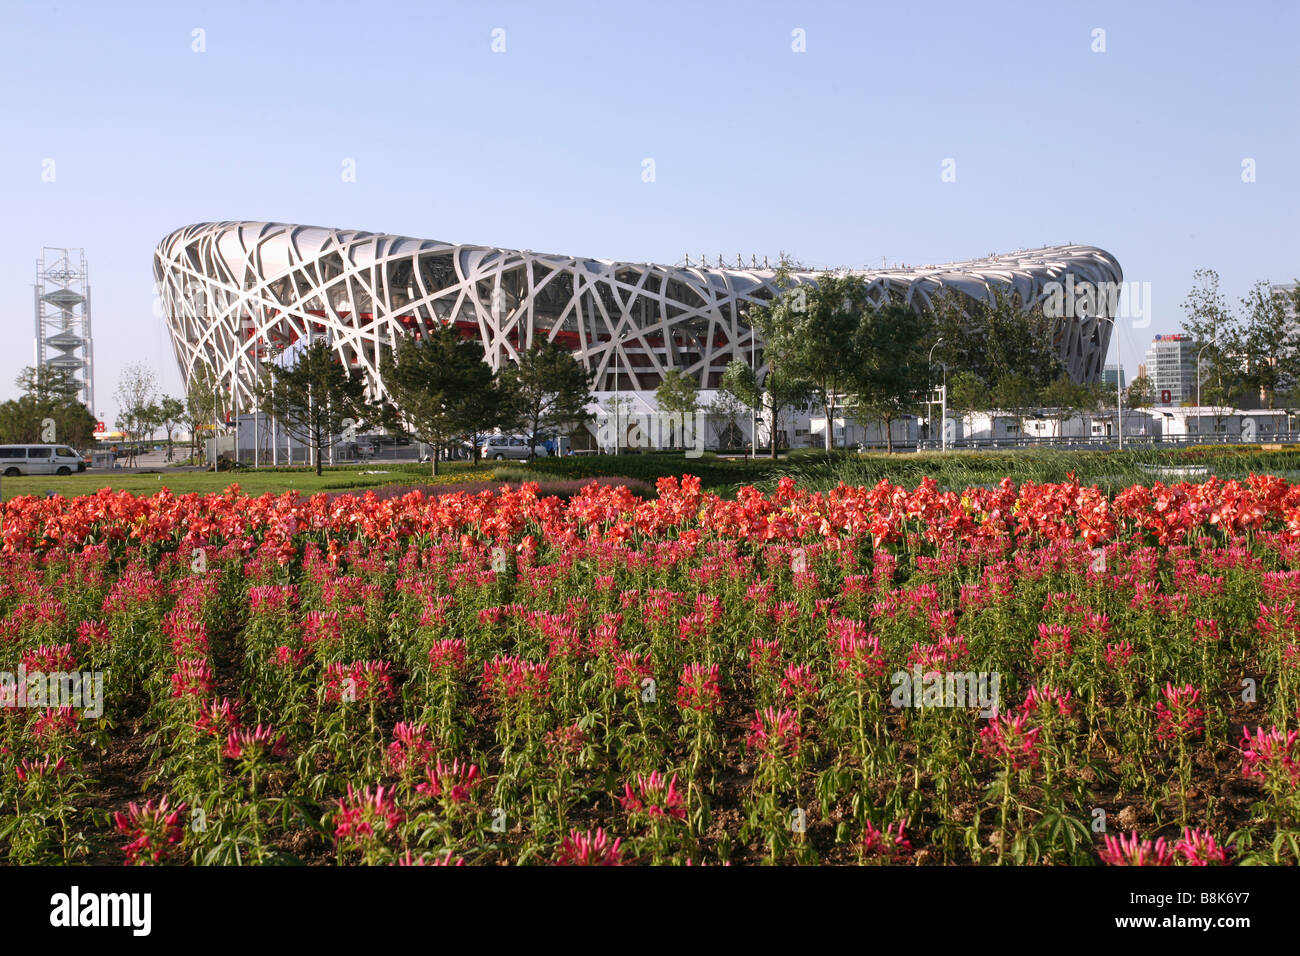 National Stadium,Beijing,China Stock Photo